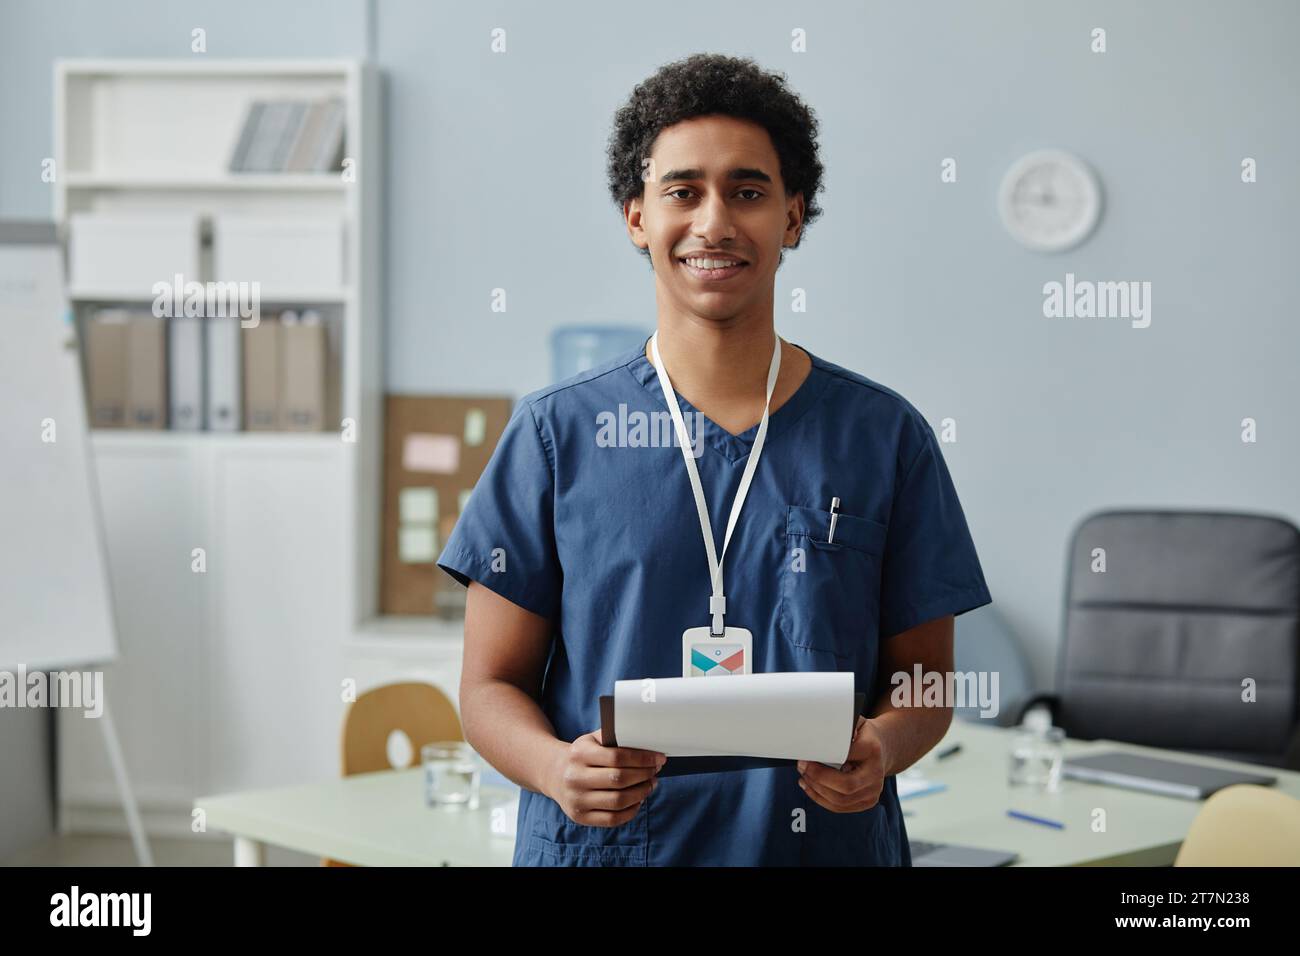 Ritratto in vita di un giovane uomo arabo che indossa l'uniforme da scrub e tiene gli appunti in clinica, nello spazio per le copie Foto Stock